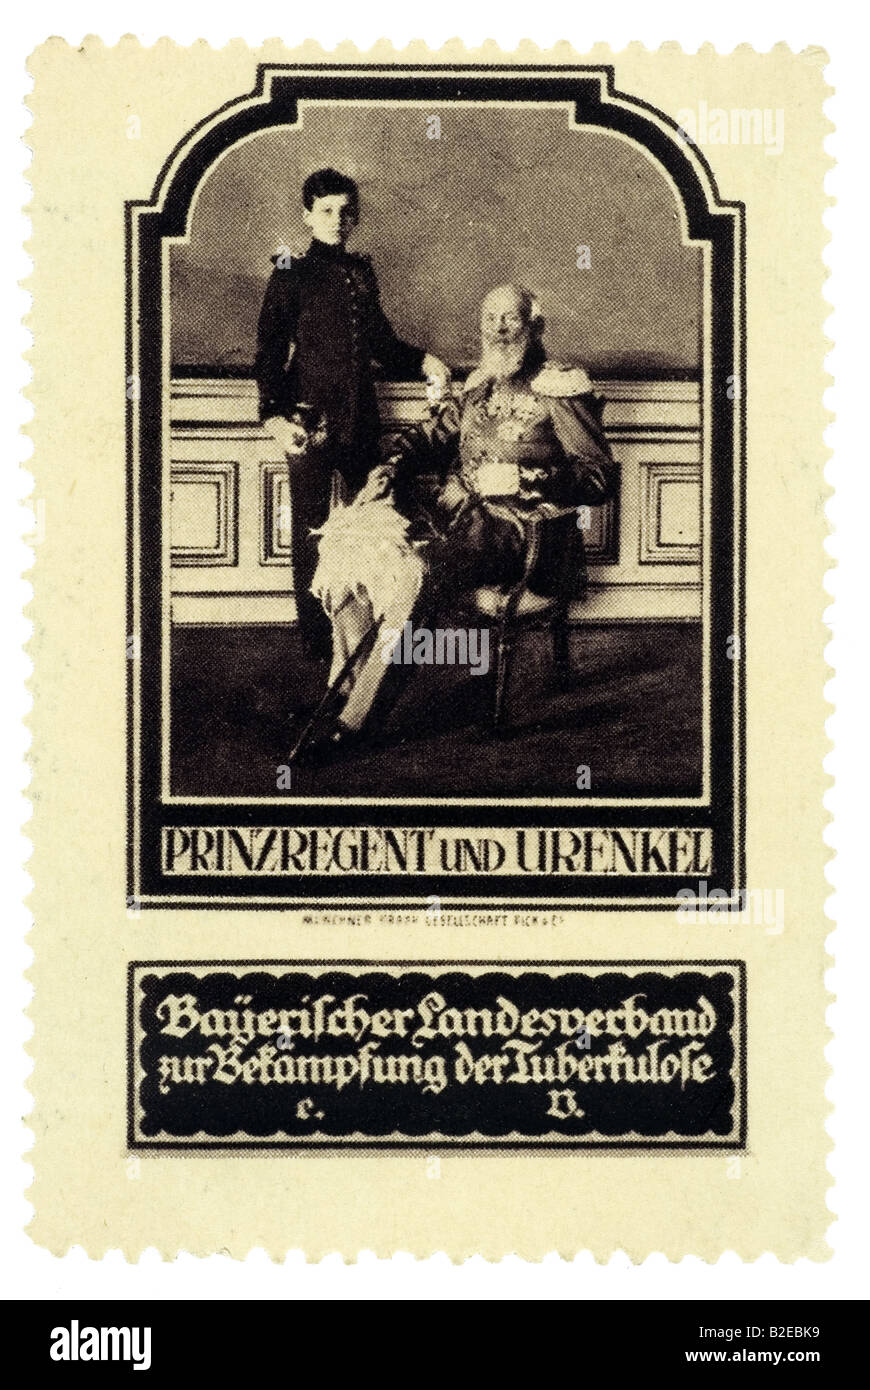 trading stamp Prinzregent und Urenkel Bayerischer Landesverbandt zur Bekämpfung der Tuberkulose rechts Ludwig III von Bayern... Stock Photo